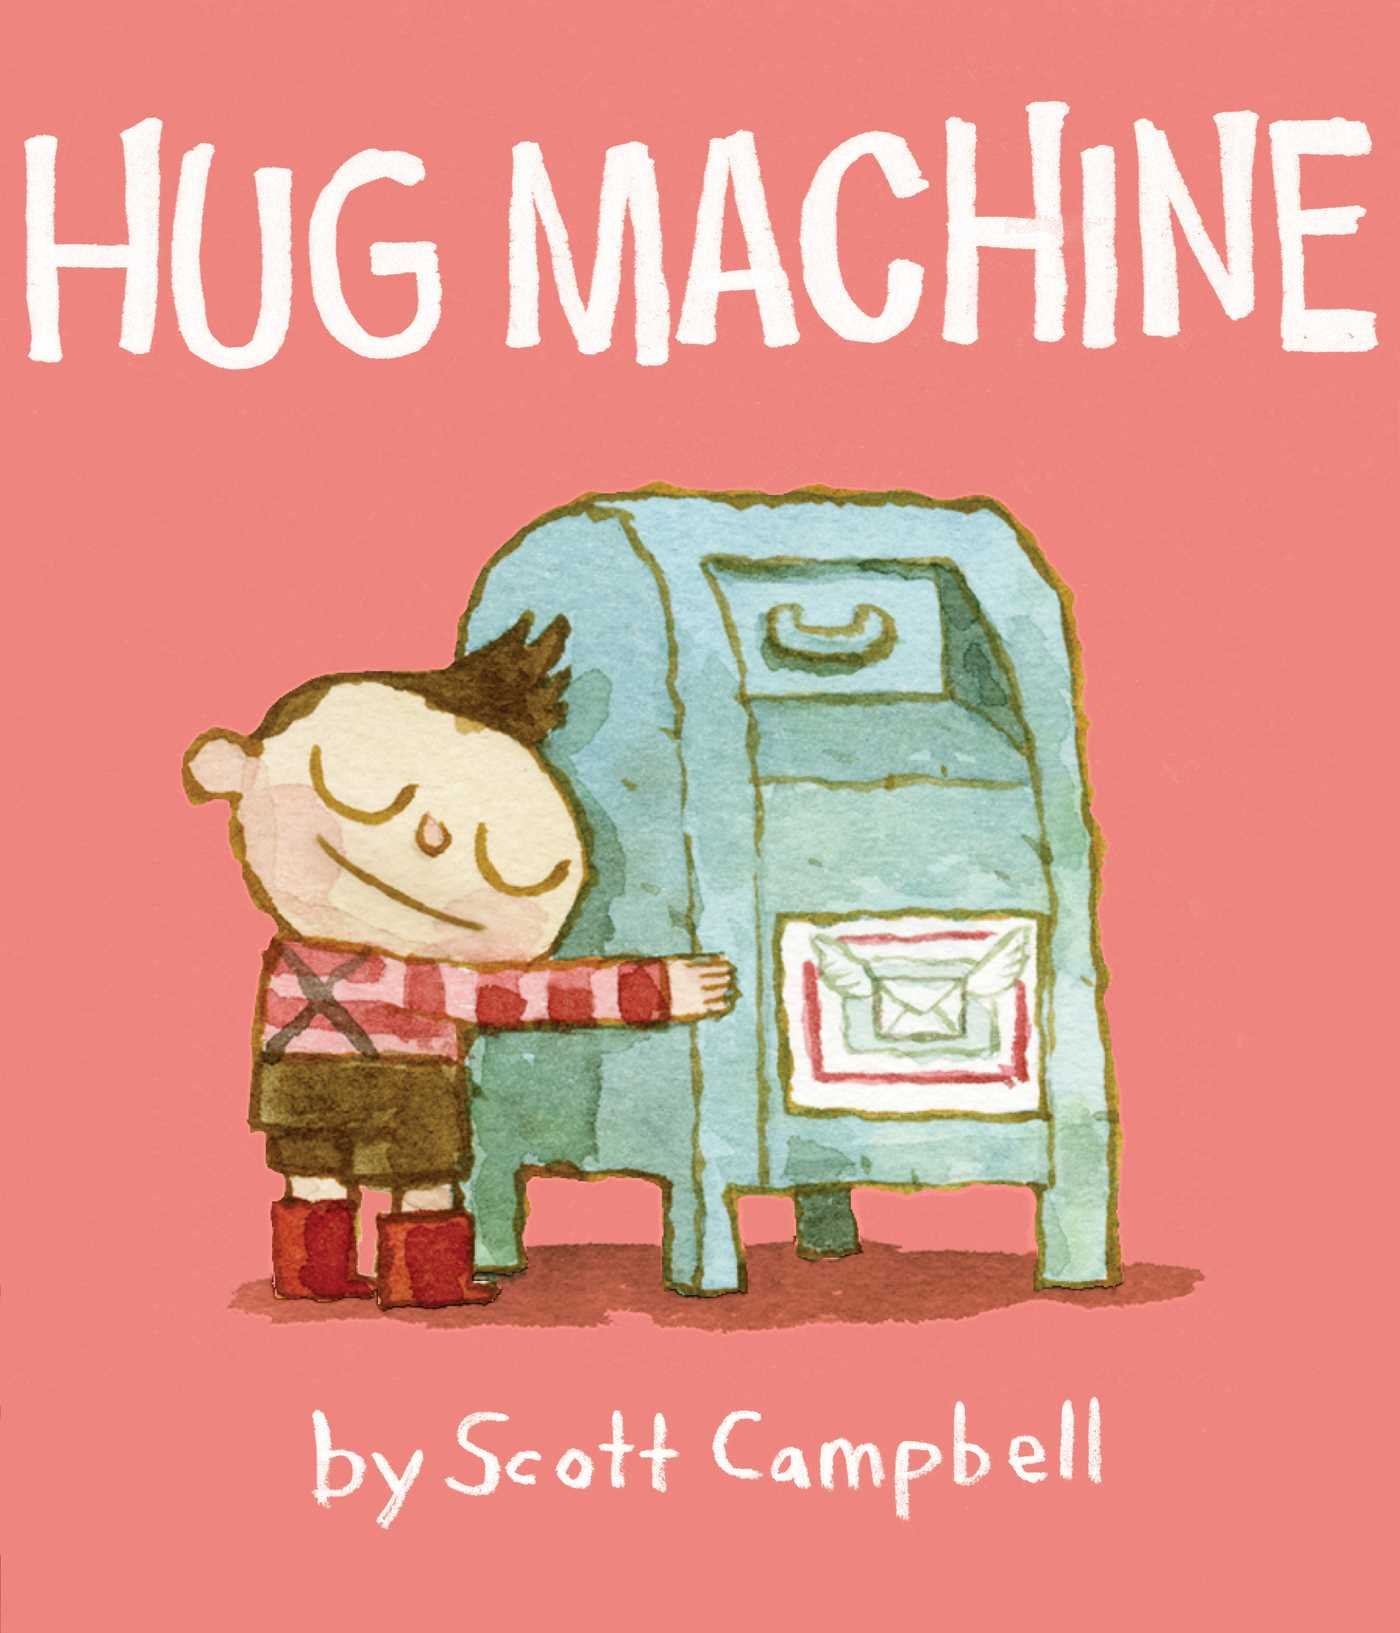 image for "Hug machine"